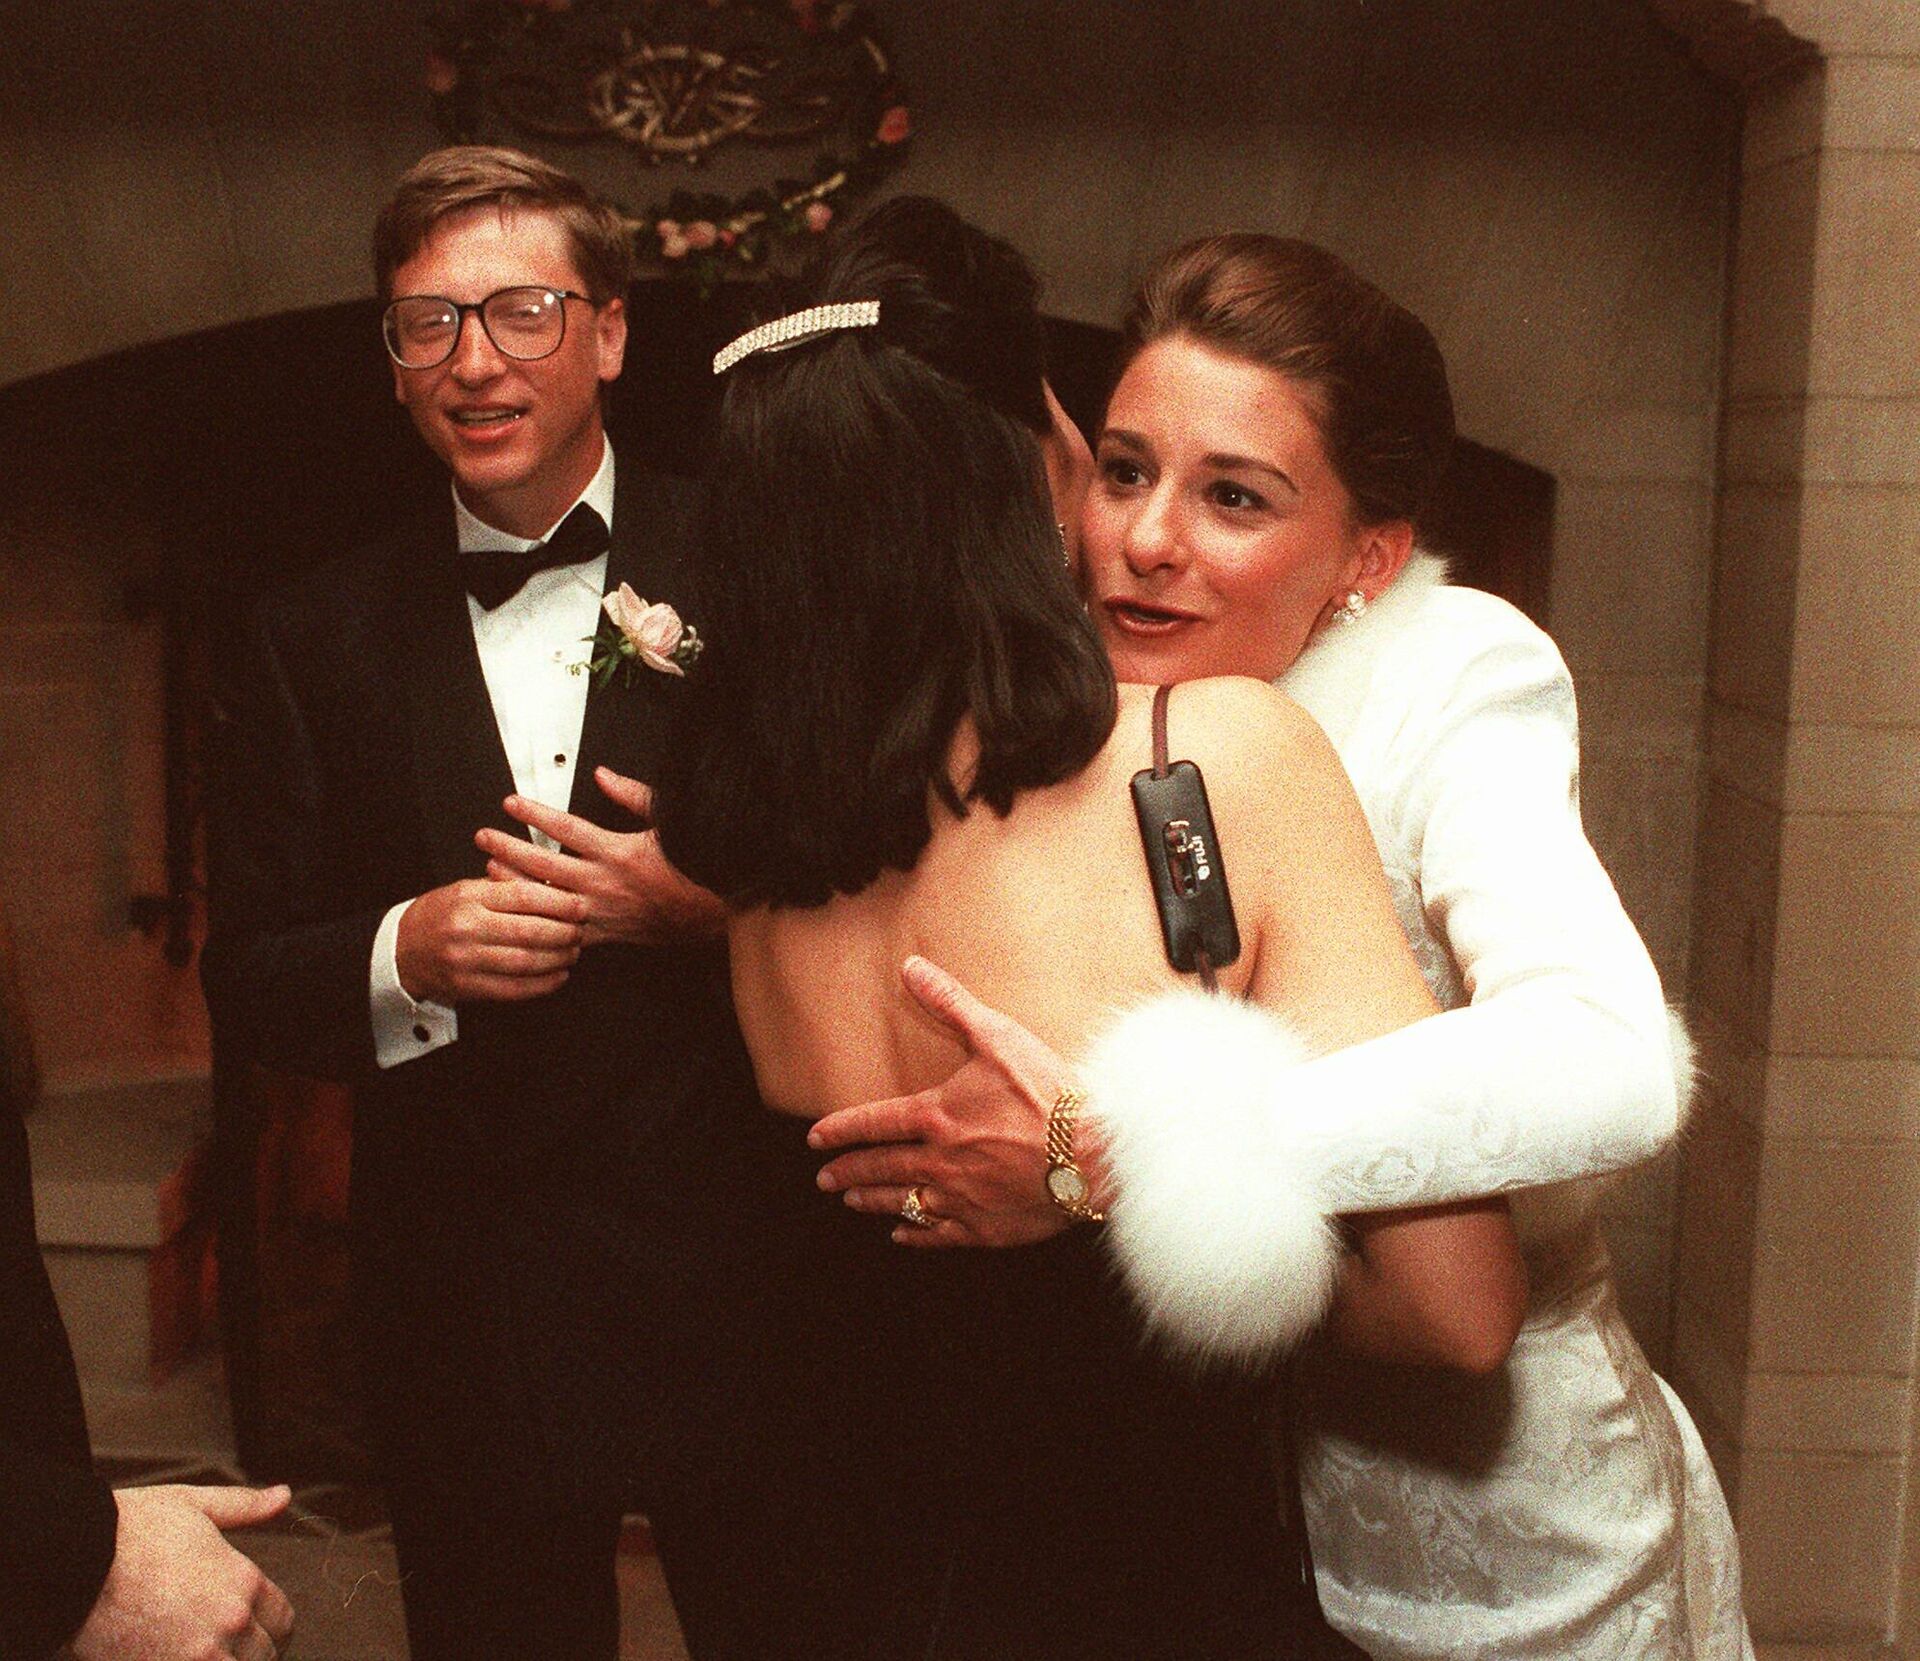 La boda de Bill y Melinda Gates - Sputnik Mundo, 1920, 05.05.2021